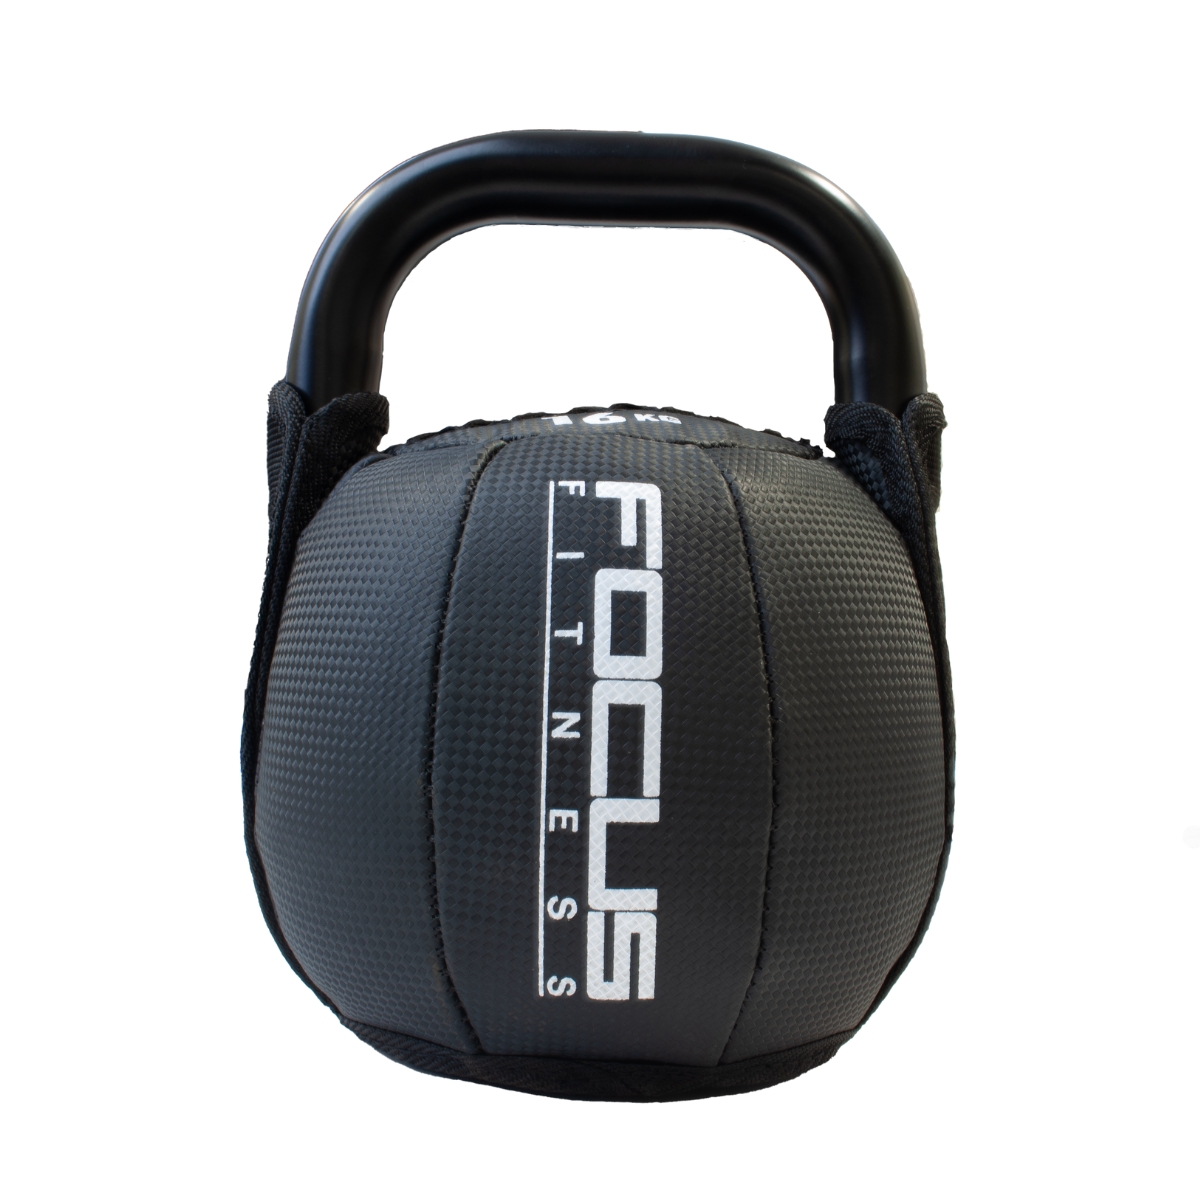 Koop Kettlebell - Focus Fitness - Soft - 16 kg - 8718627096352